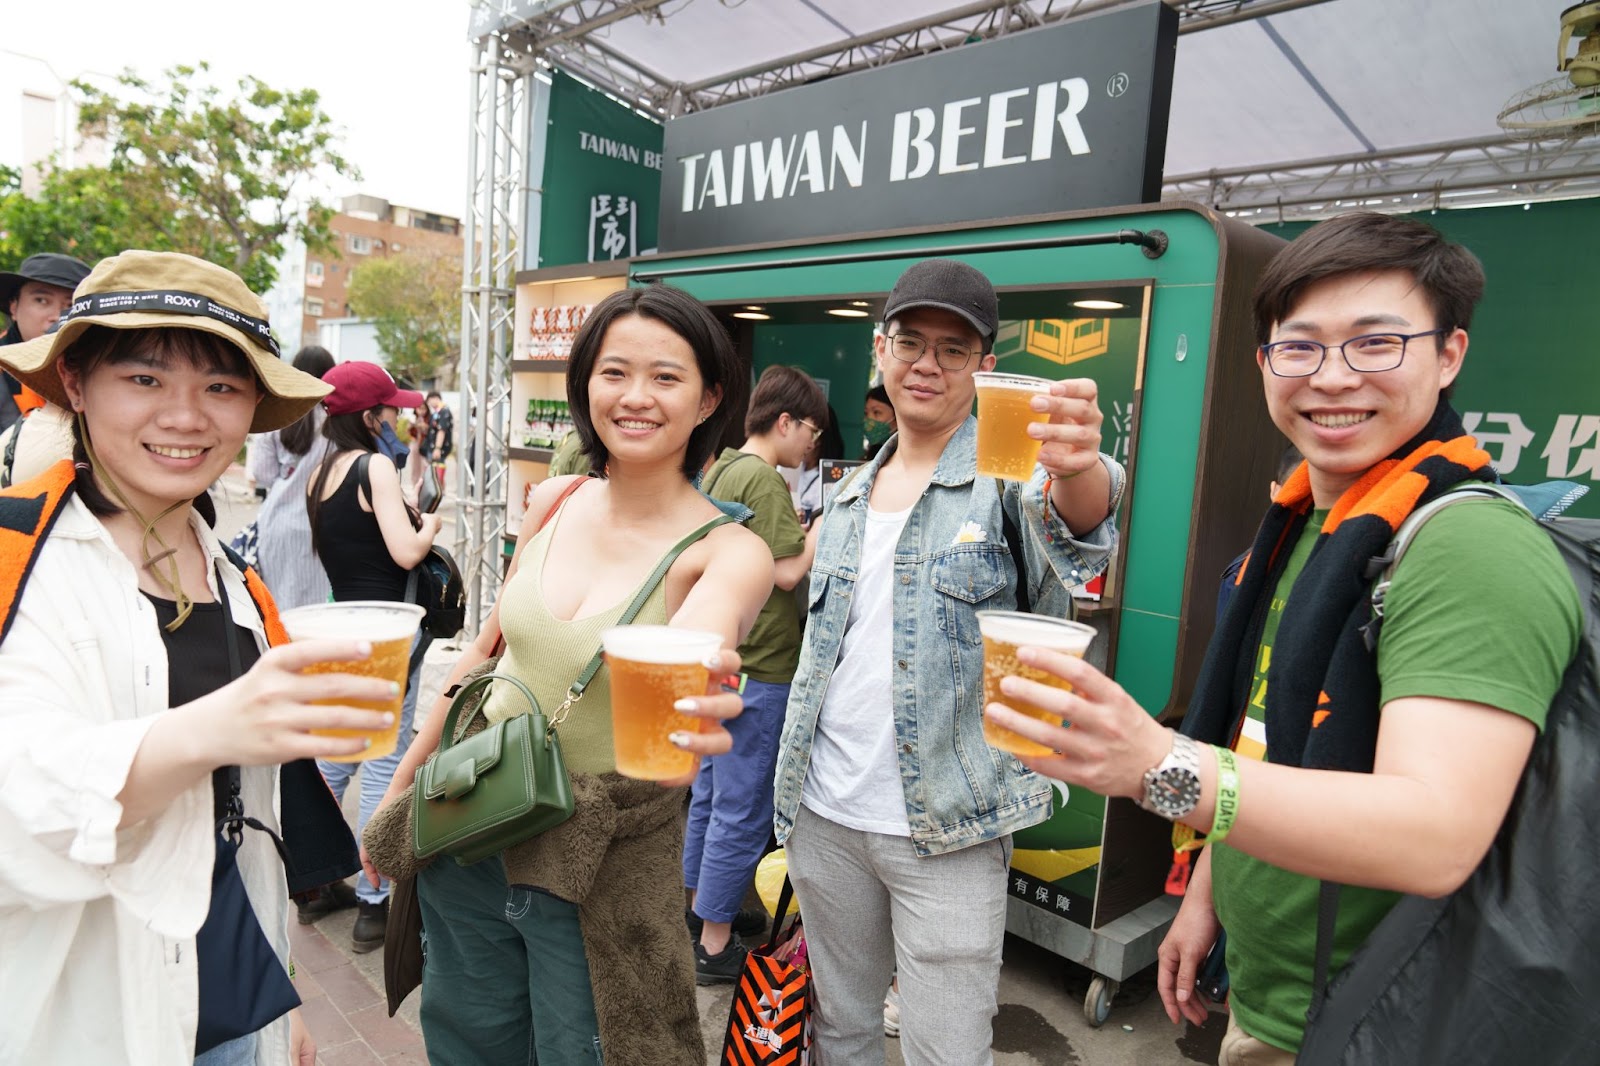 台灣啤酒用行動支持在地音樂，支持大港音樂祭